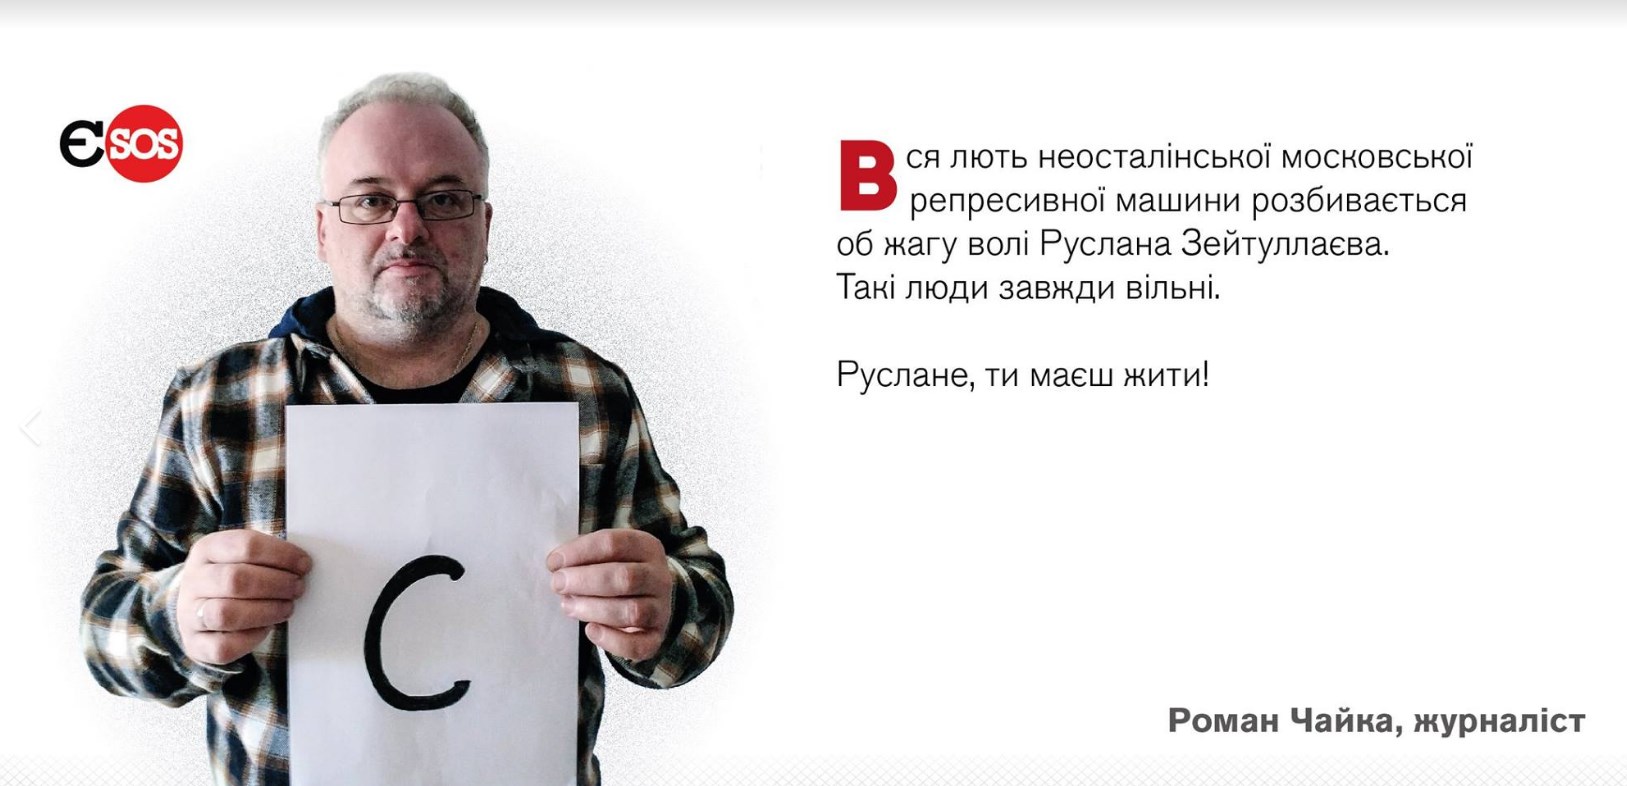 В сети проходит акция в поддержку голодающего Руслана Зейтуллаева